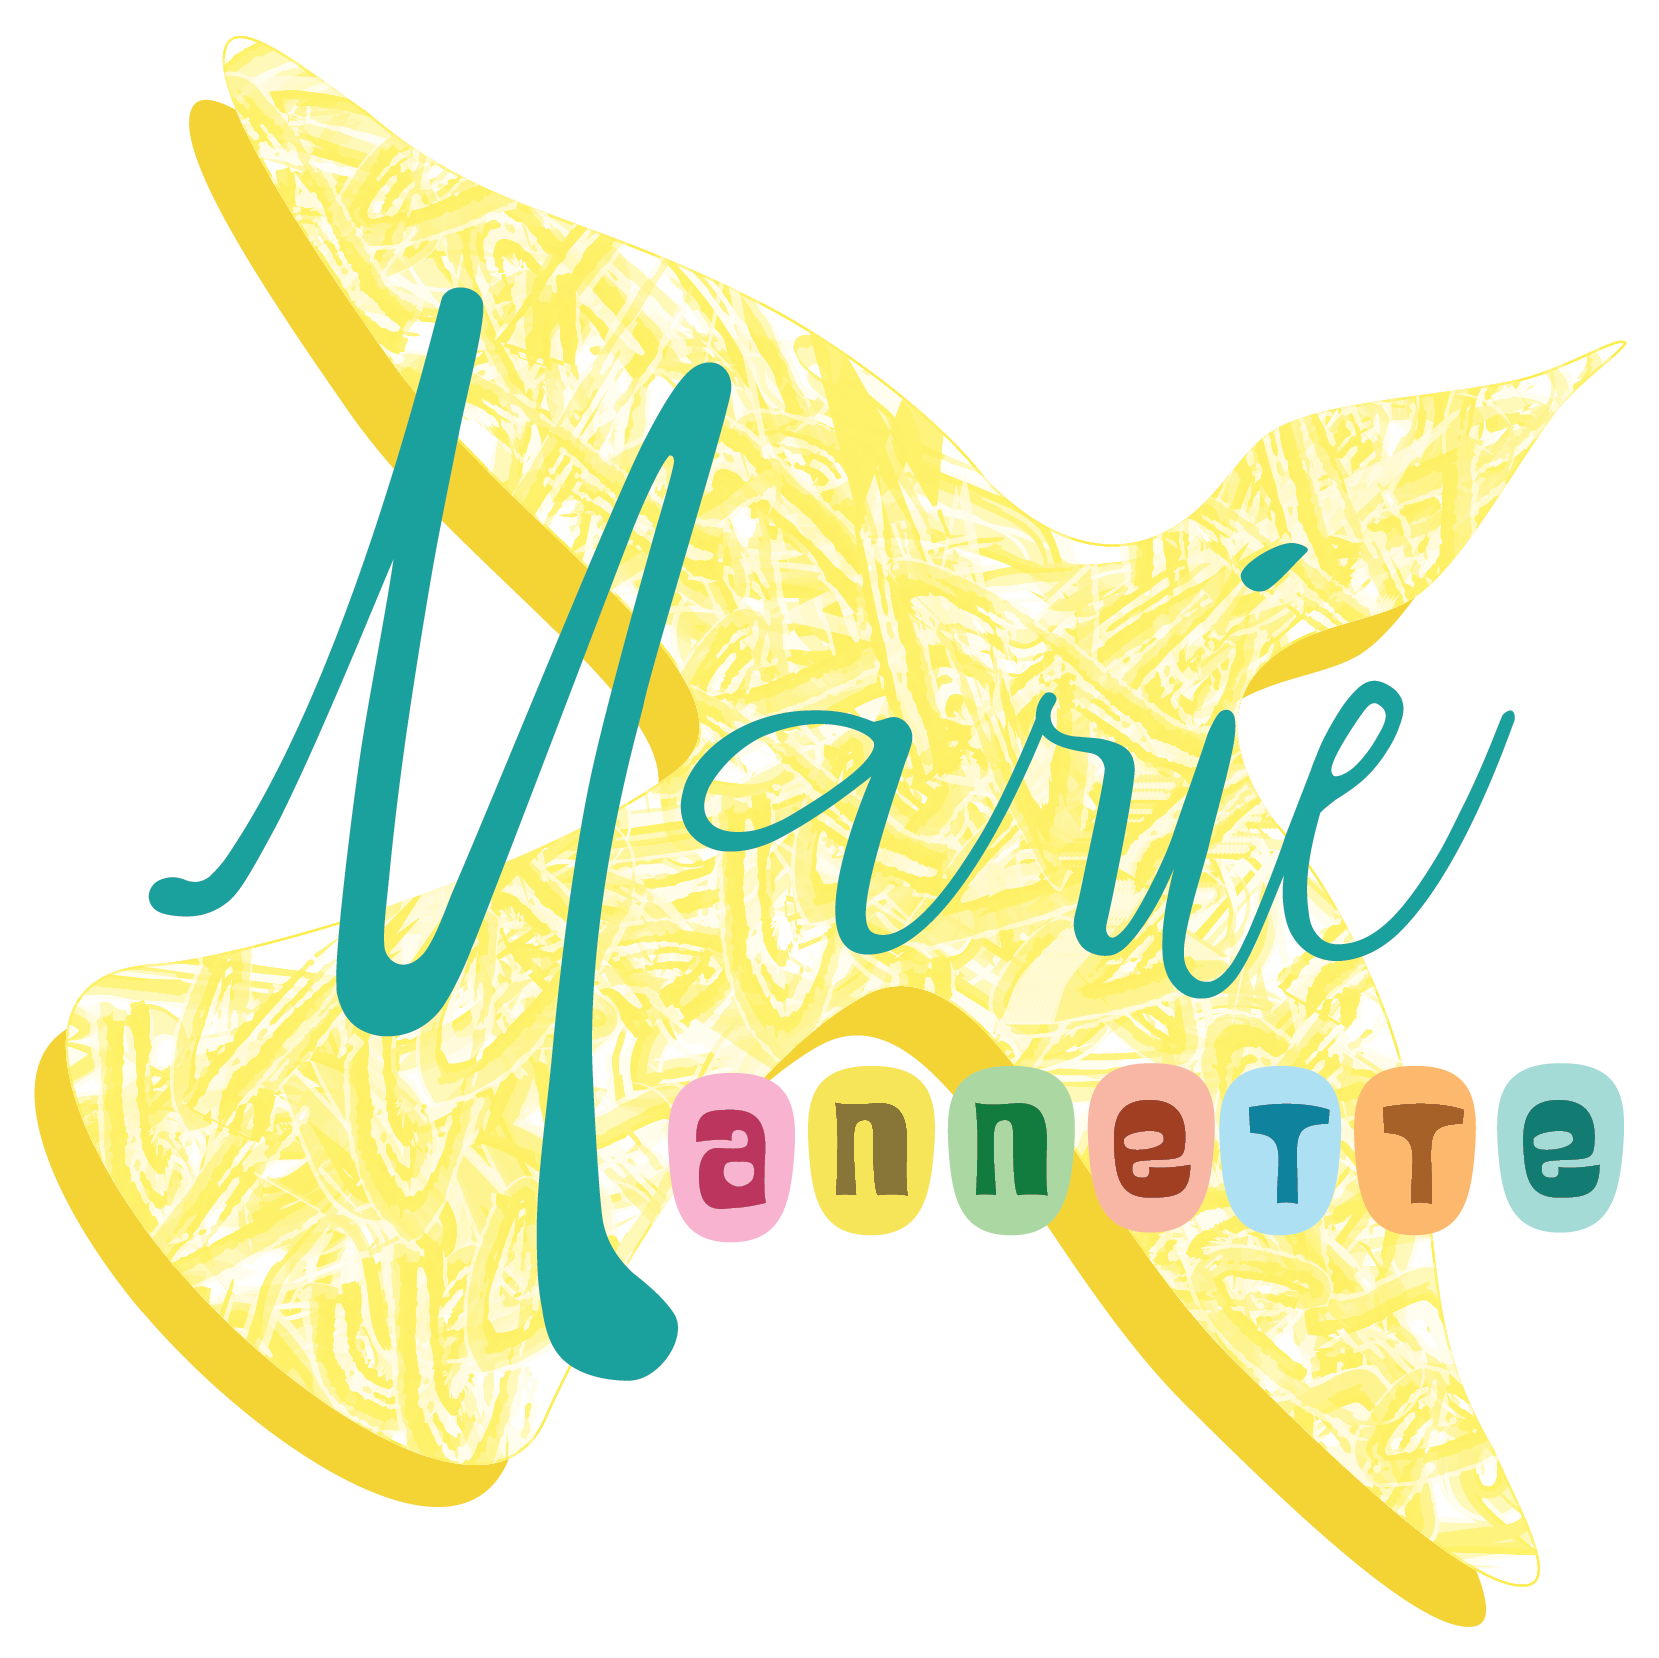 Marie Annette Art logo